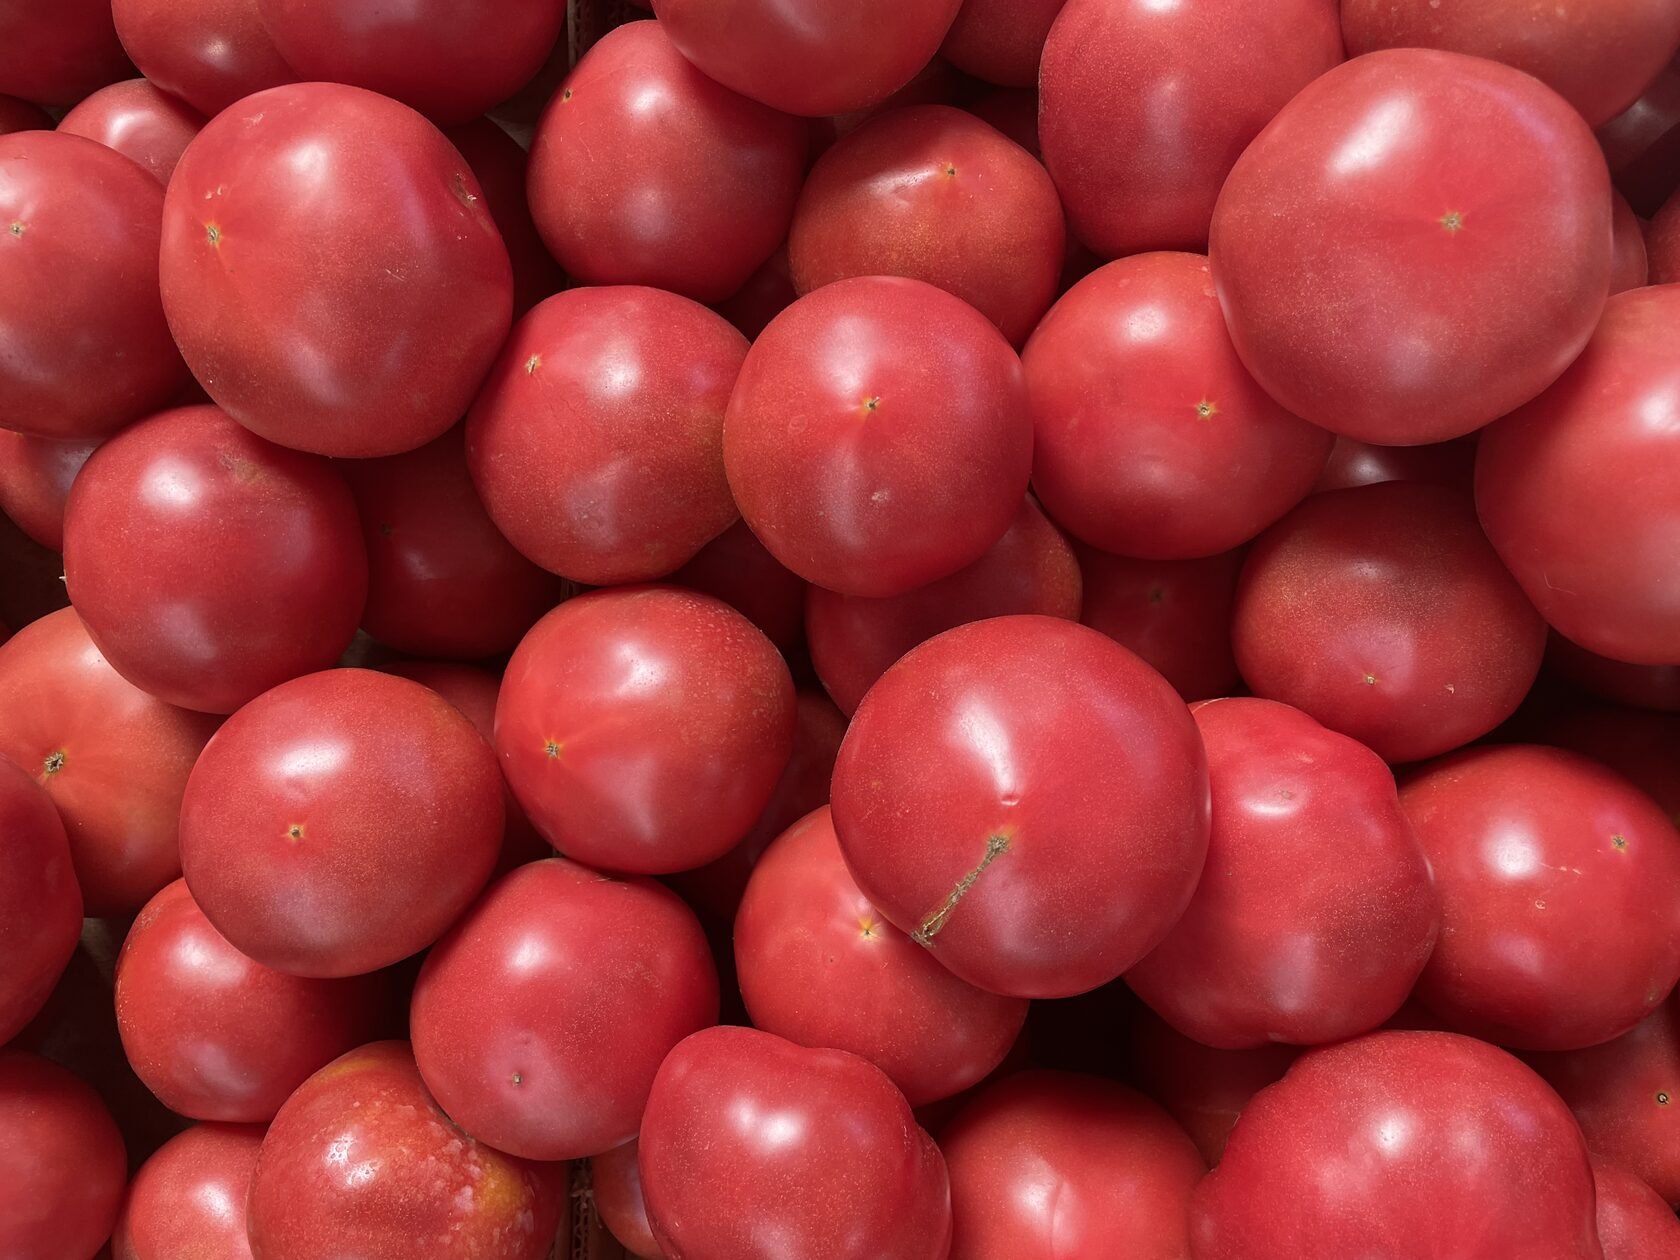 Розовый томат открытого